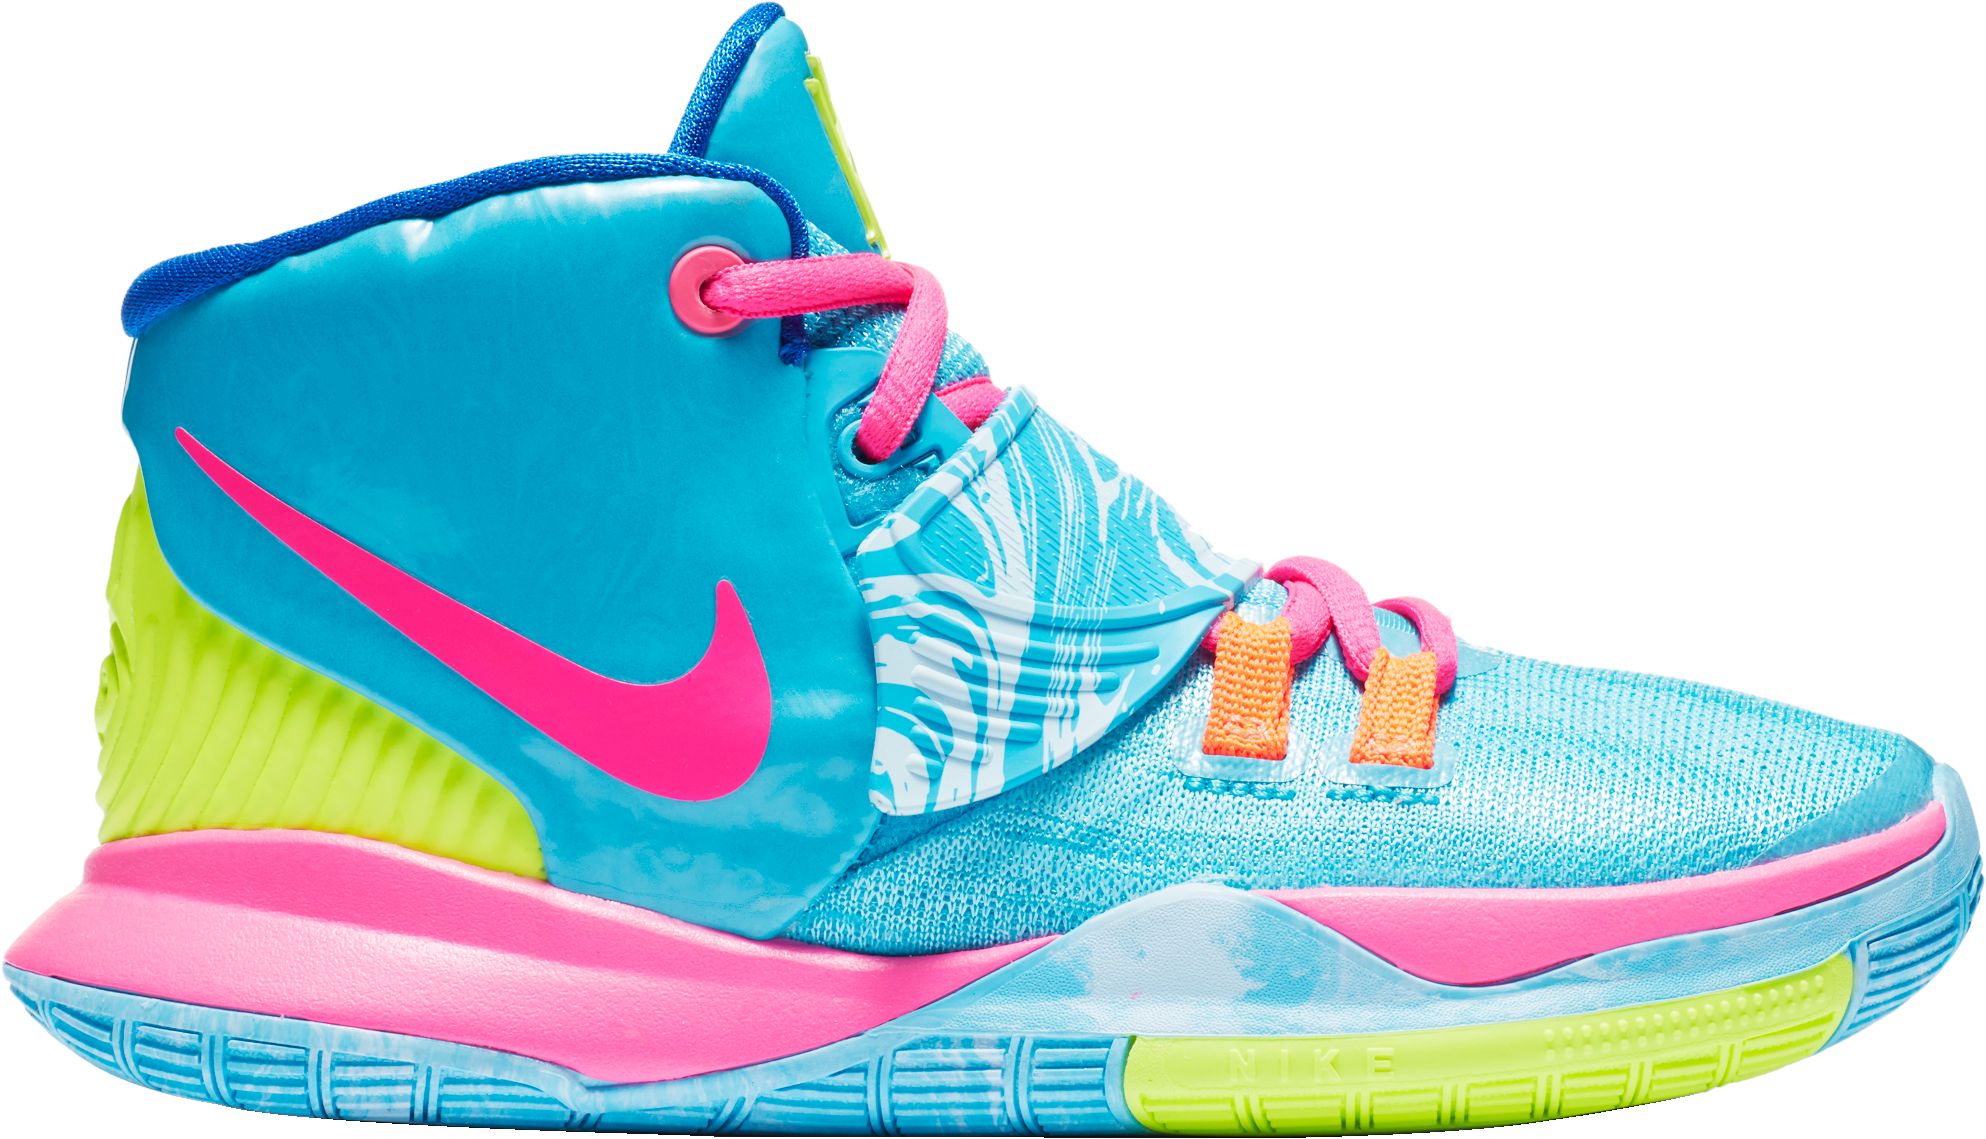 Nike Kyrie 6 Preheat Taipei Basketball Sneakers Reviews Ratings